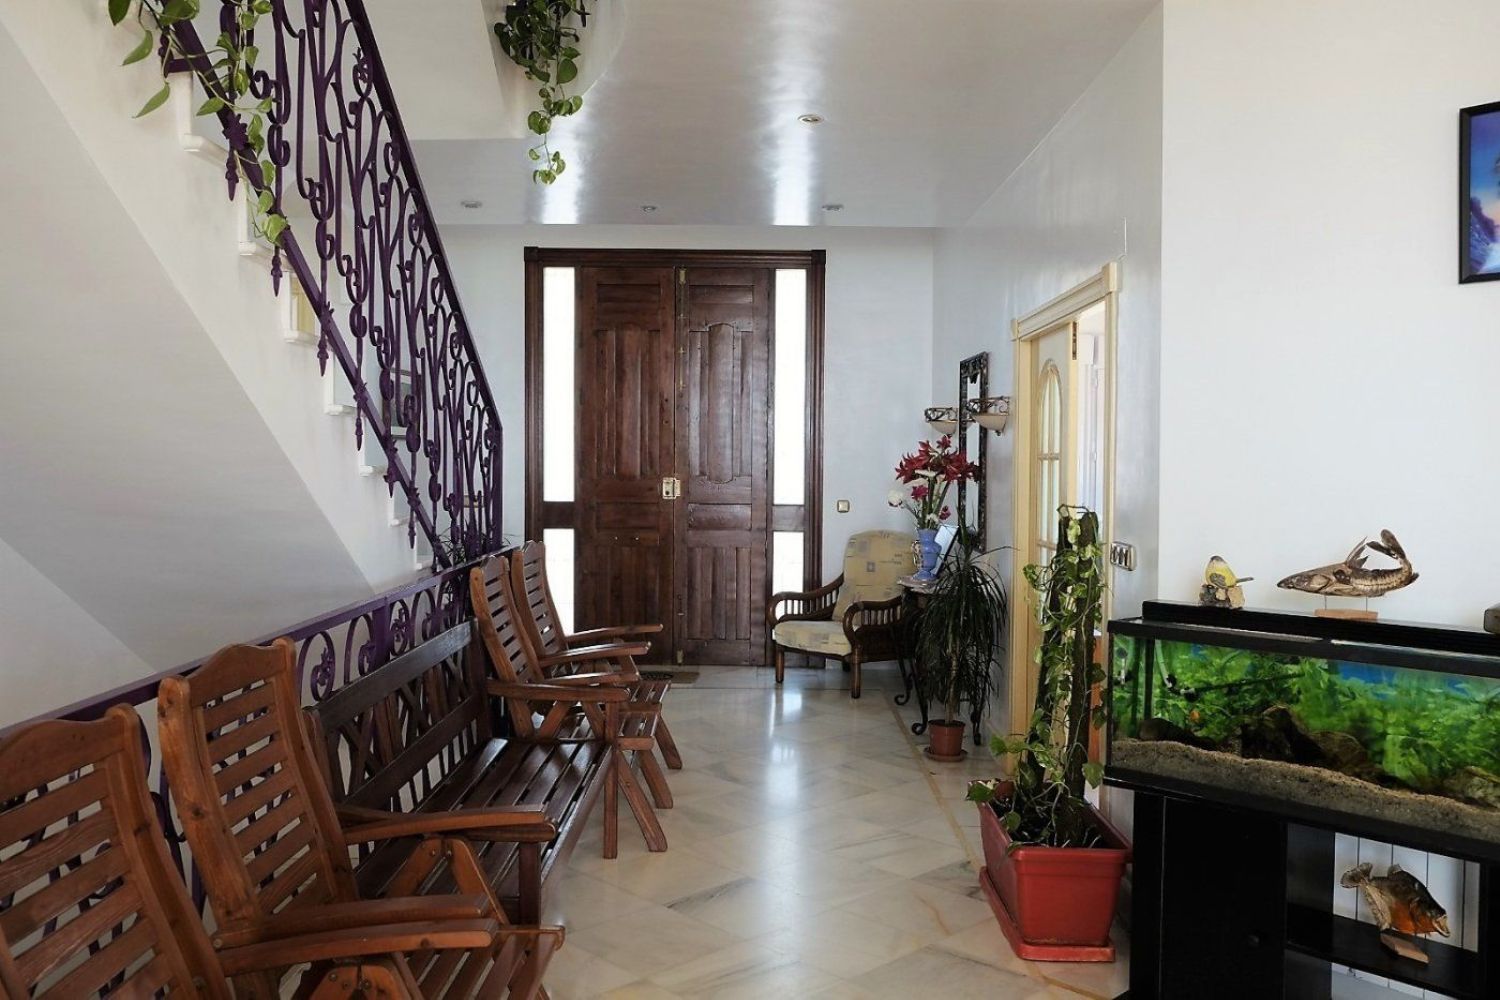 Casa o Villa on sale in Cartagena